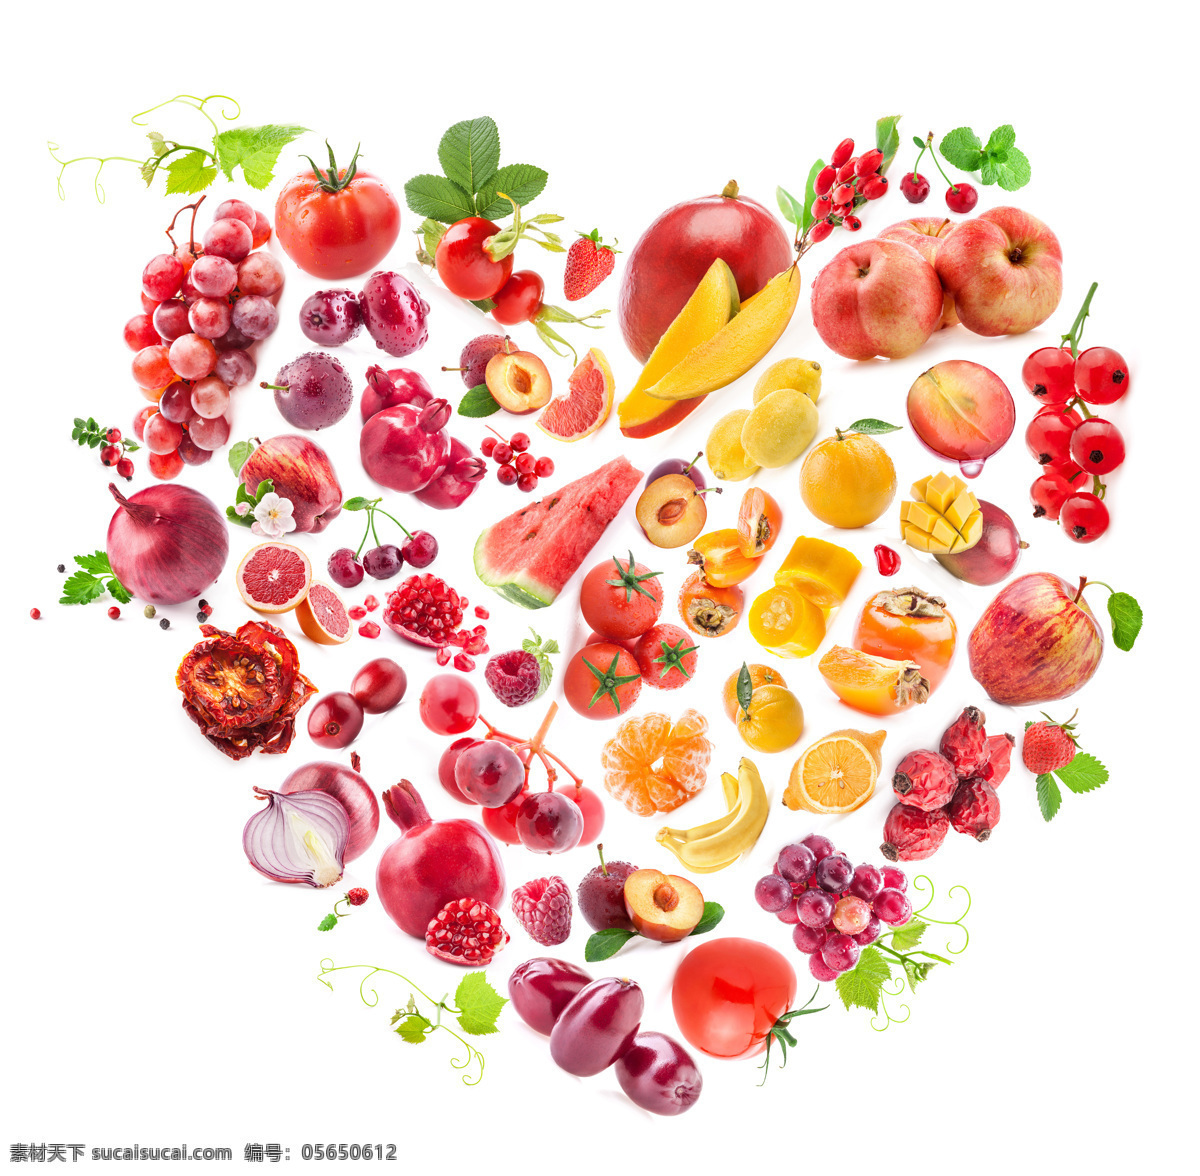 水果爱心 爱心 爱心水果 水果组合 水果 水果新鲜 新鲜水果 水果广告 水果展示 生物世界